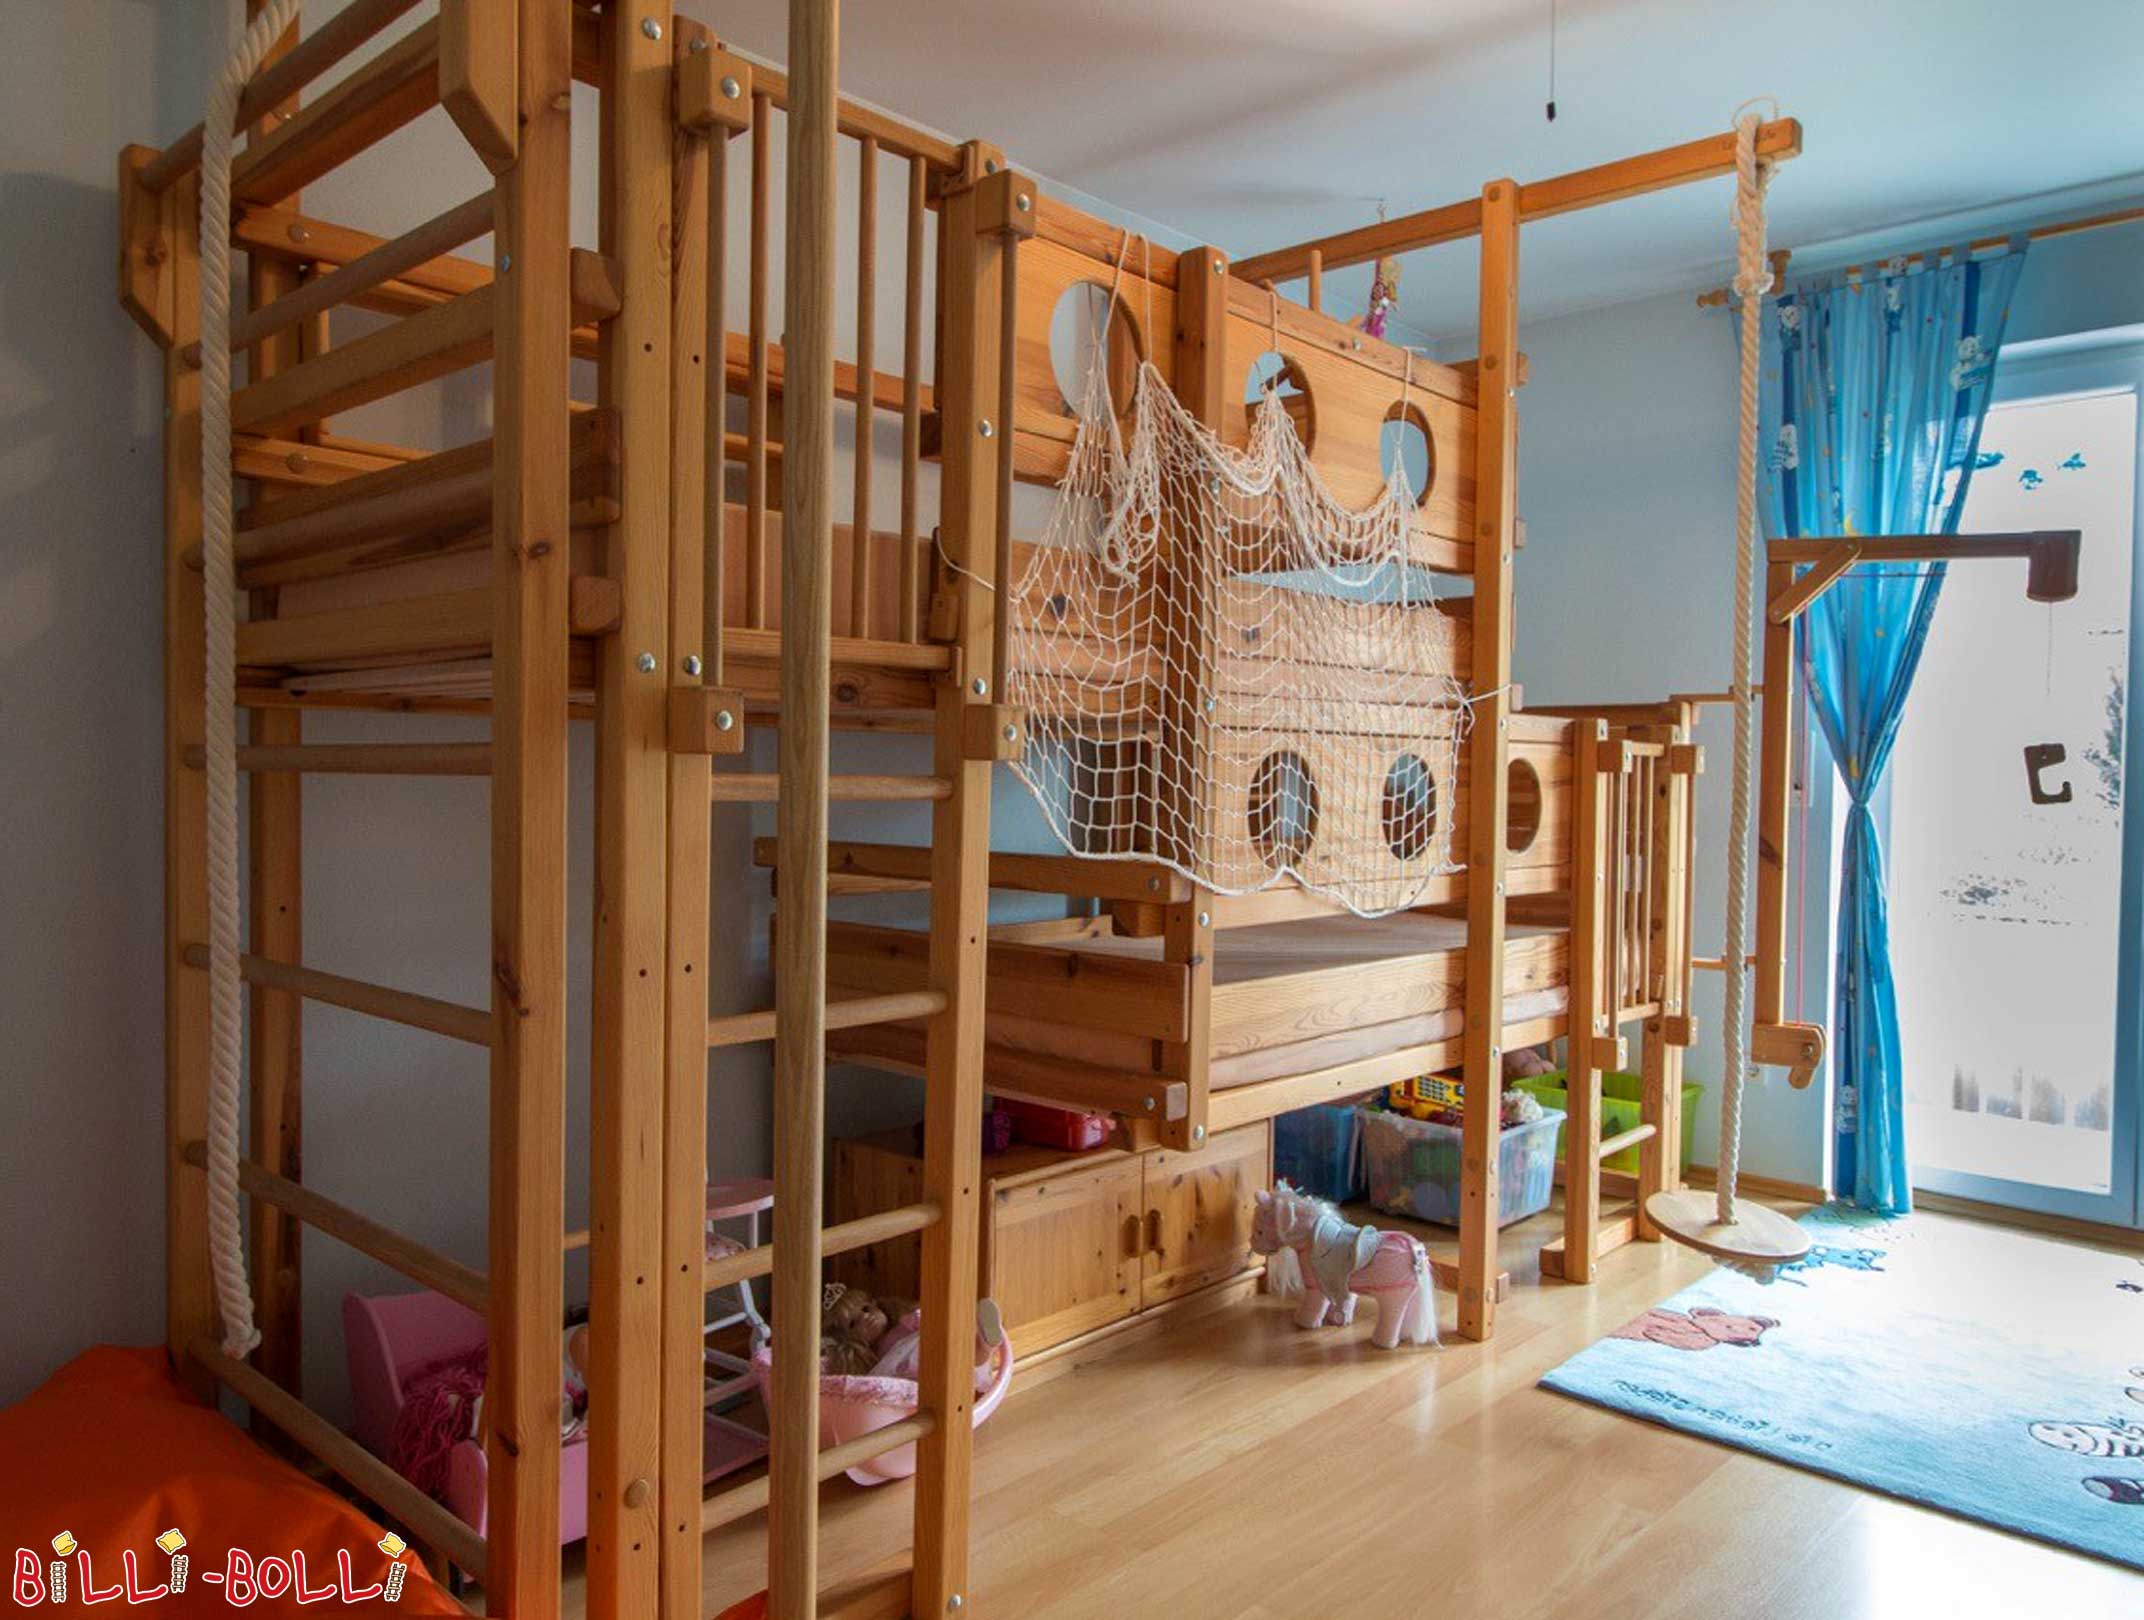 Llits tipus loft dobles de fusta: La llitera doble és una llitera doble per a 2 nens (Les dues lliteres superiors)